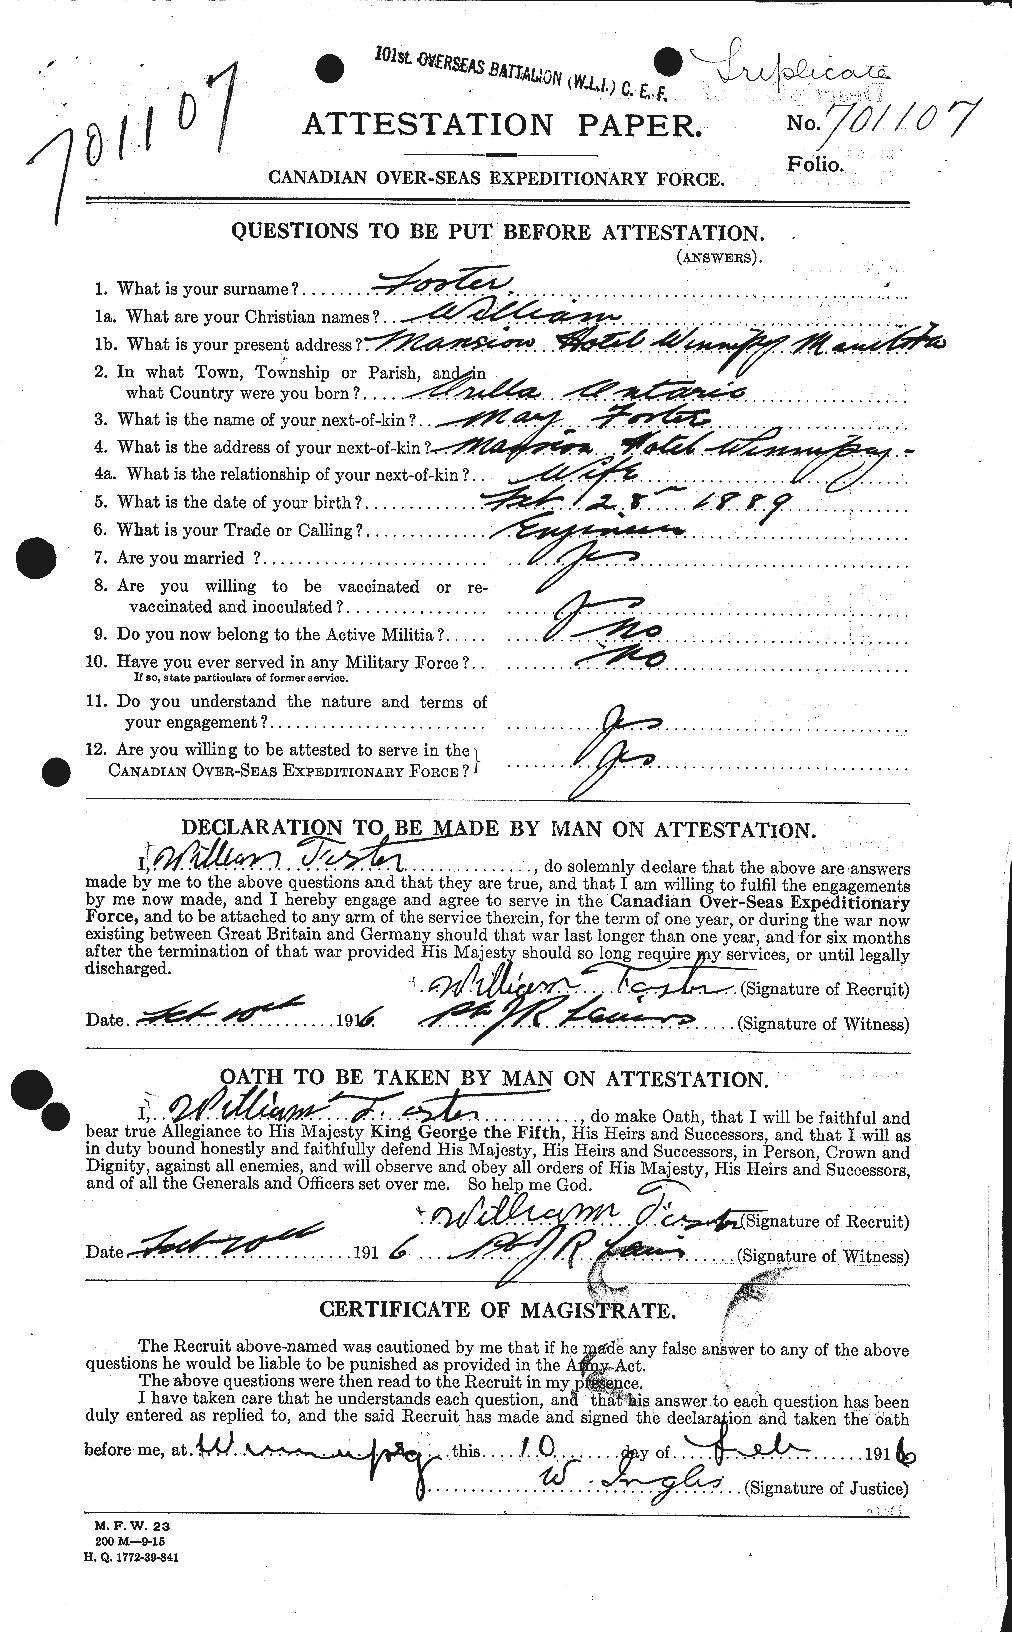 Dossiers du Personnel de la Première Guerre mondiale - CEC 328722a